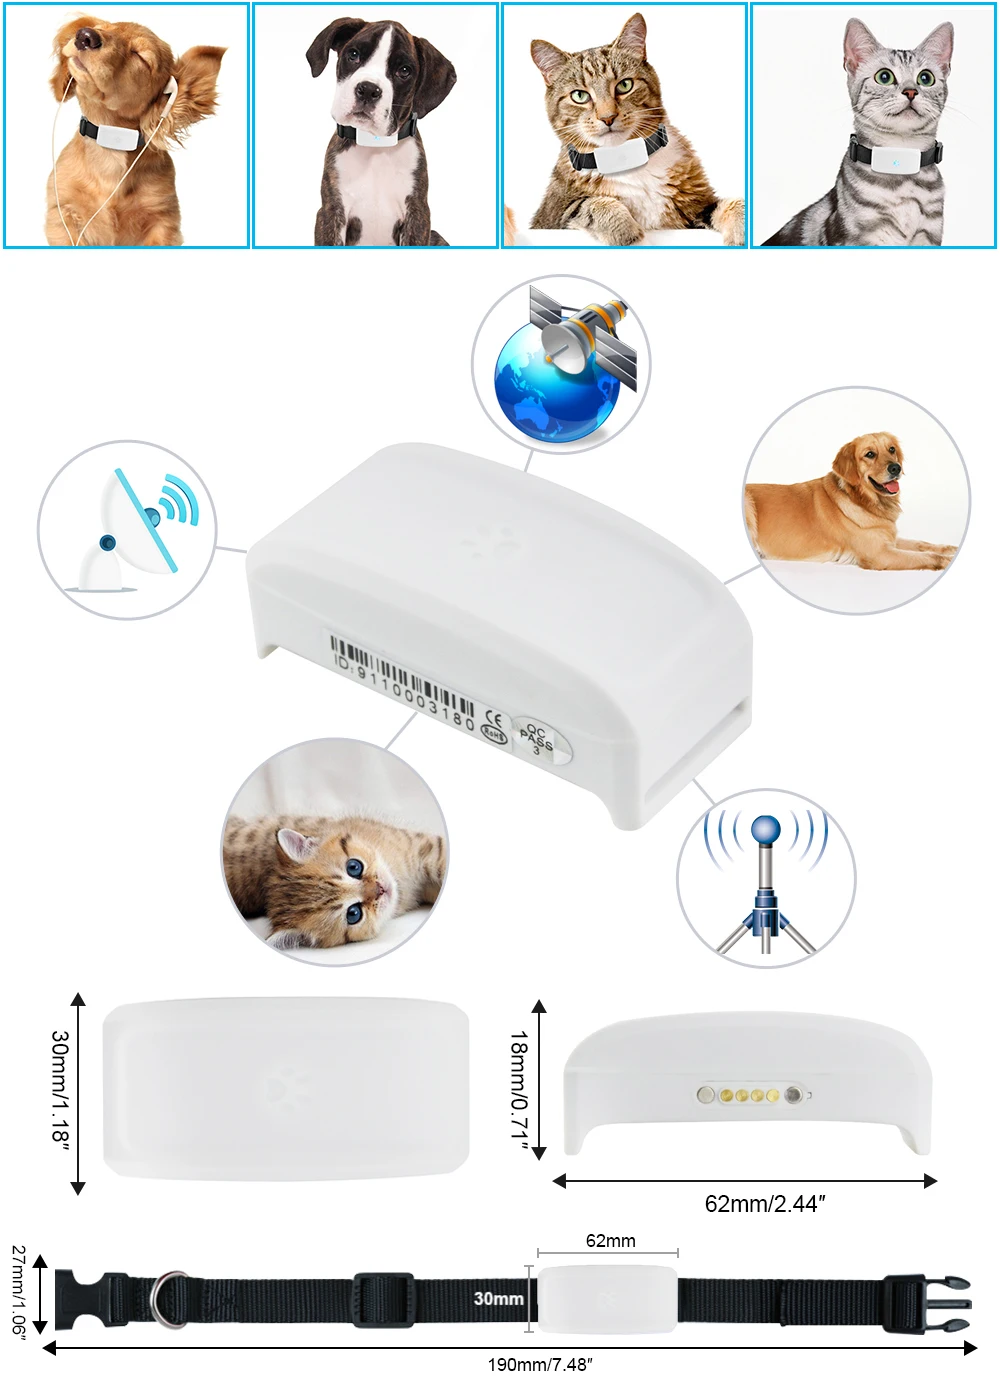 Мини TKSTAR TK911 wifi gps трекер для питомцев кошек собак водонепроницаемый Адсорбция веб-платформа приложение отслеживание в реальном времени с Google картой